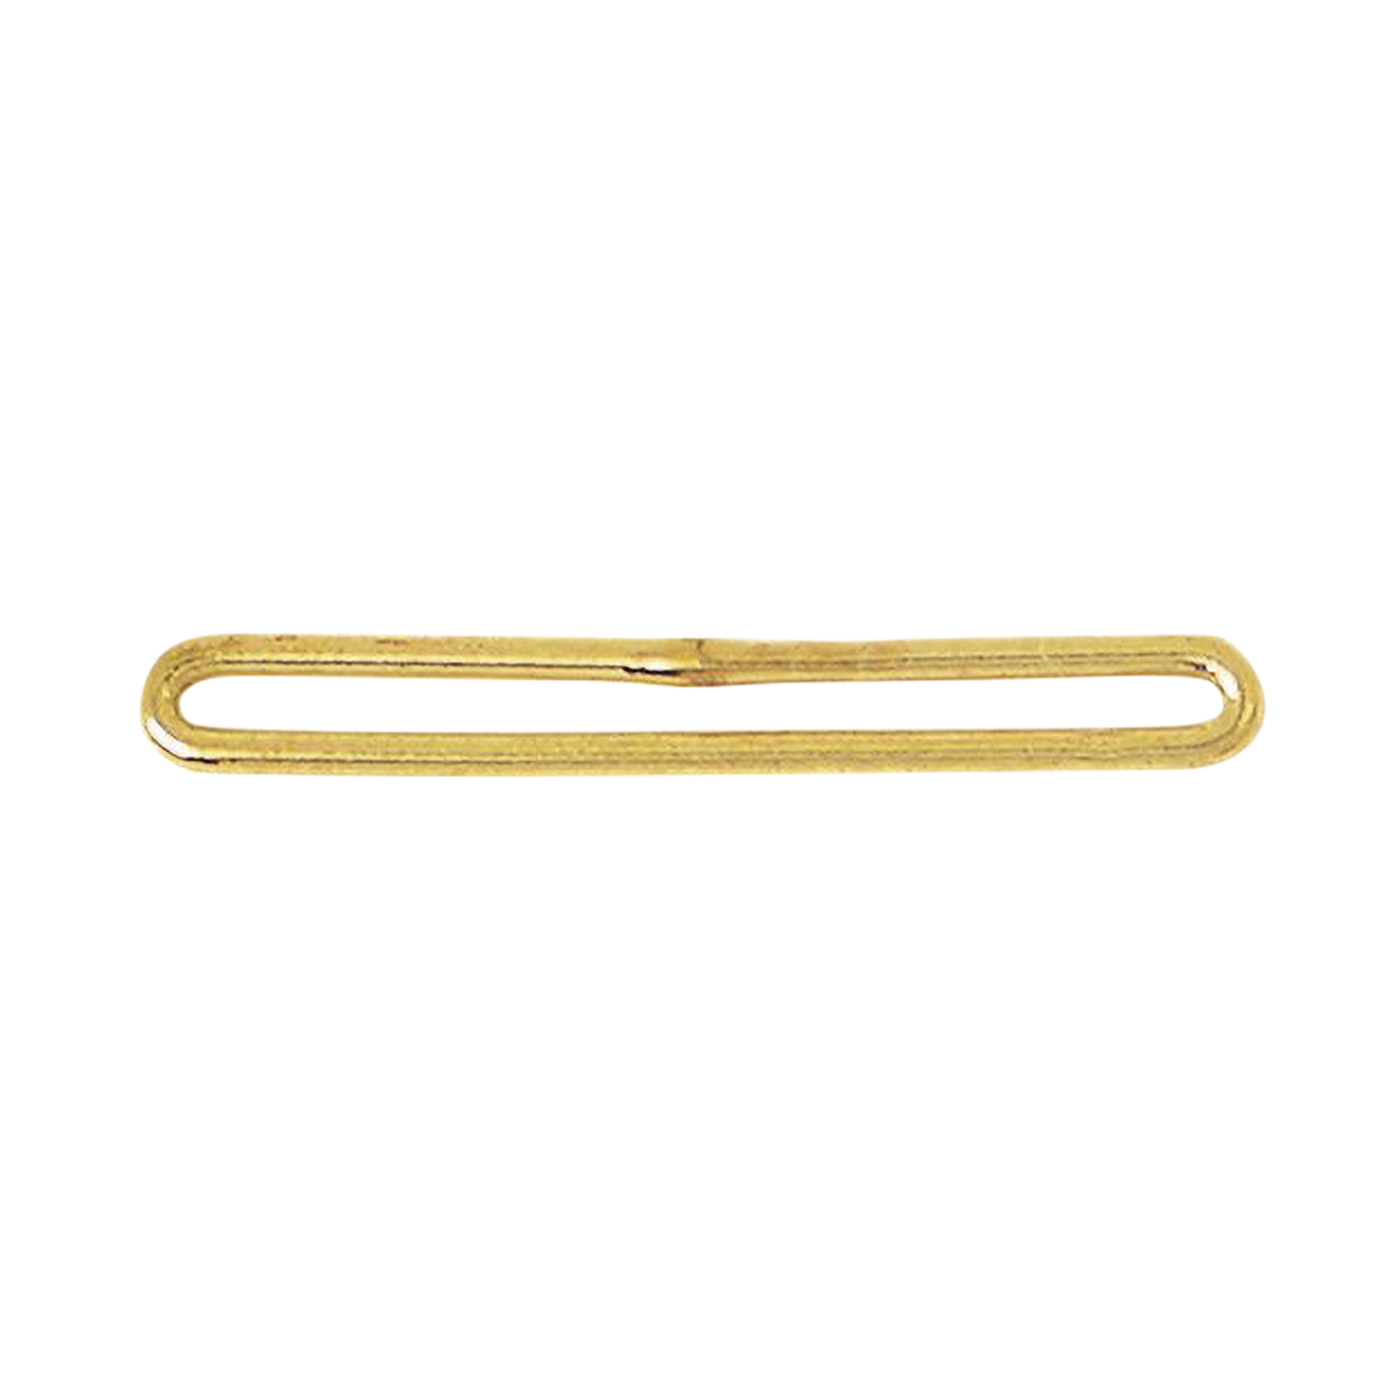 Perlsteg, 925 Ag vergoldet, 4-reihig, 21 mm - 1 Stück